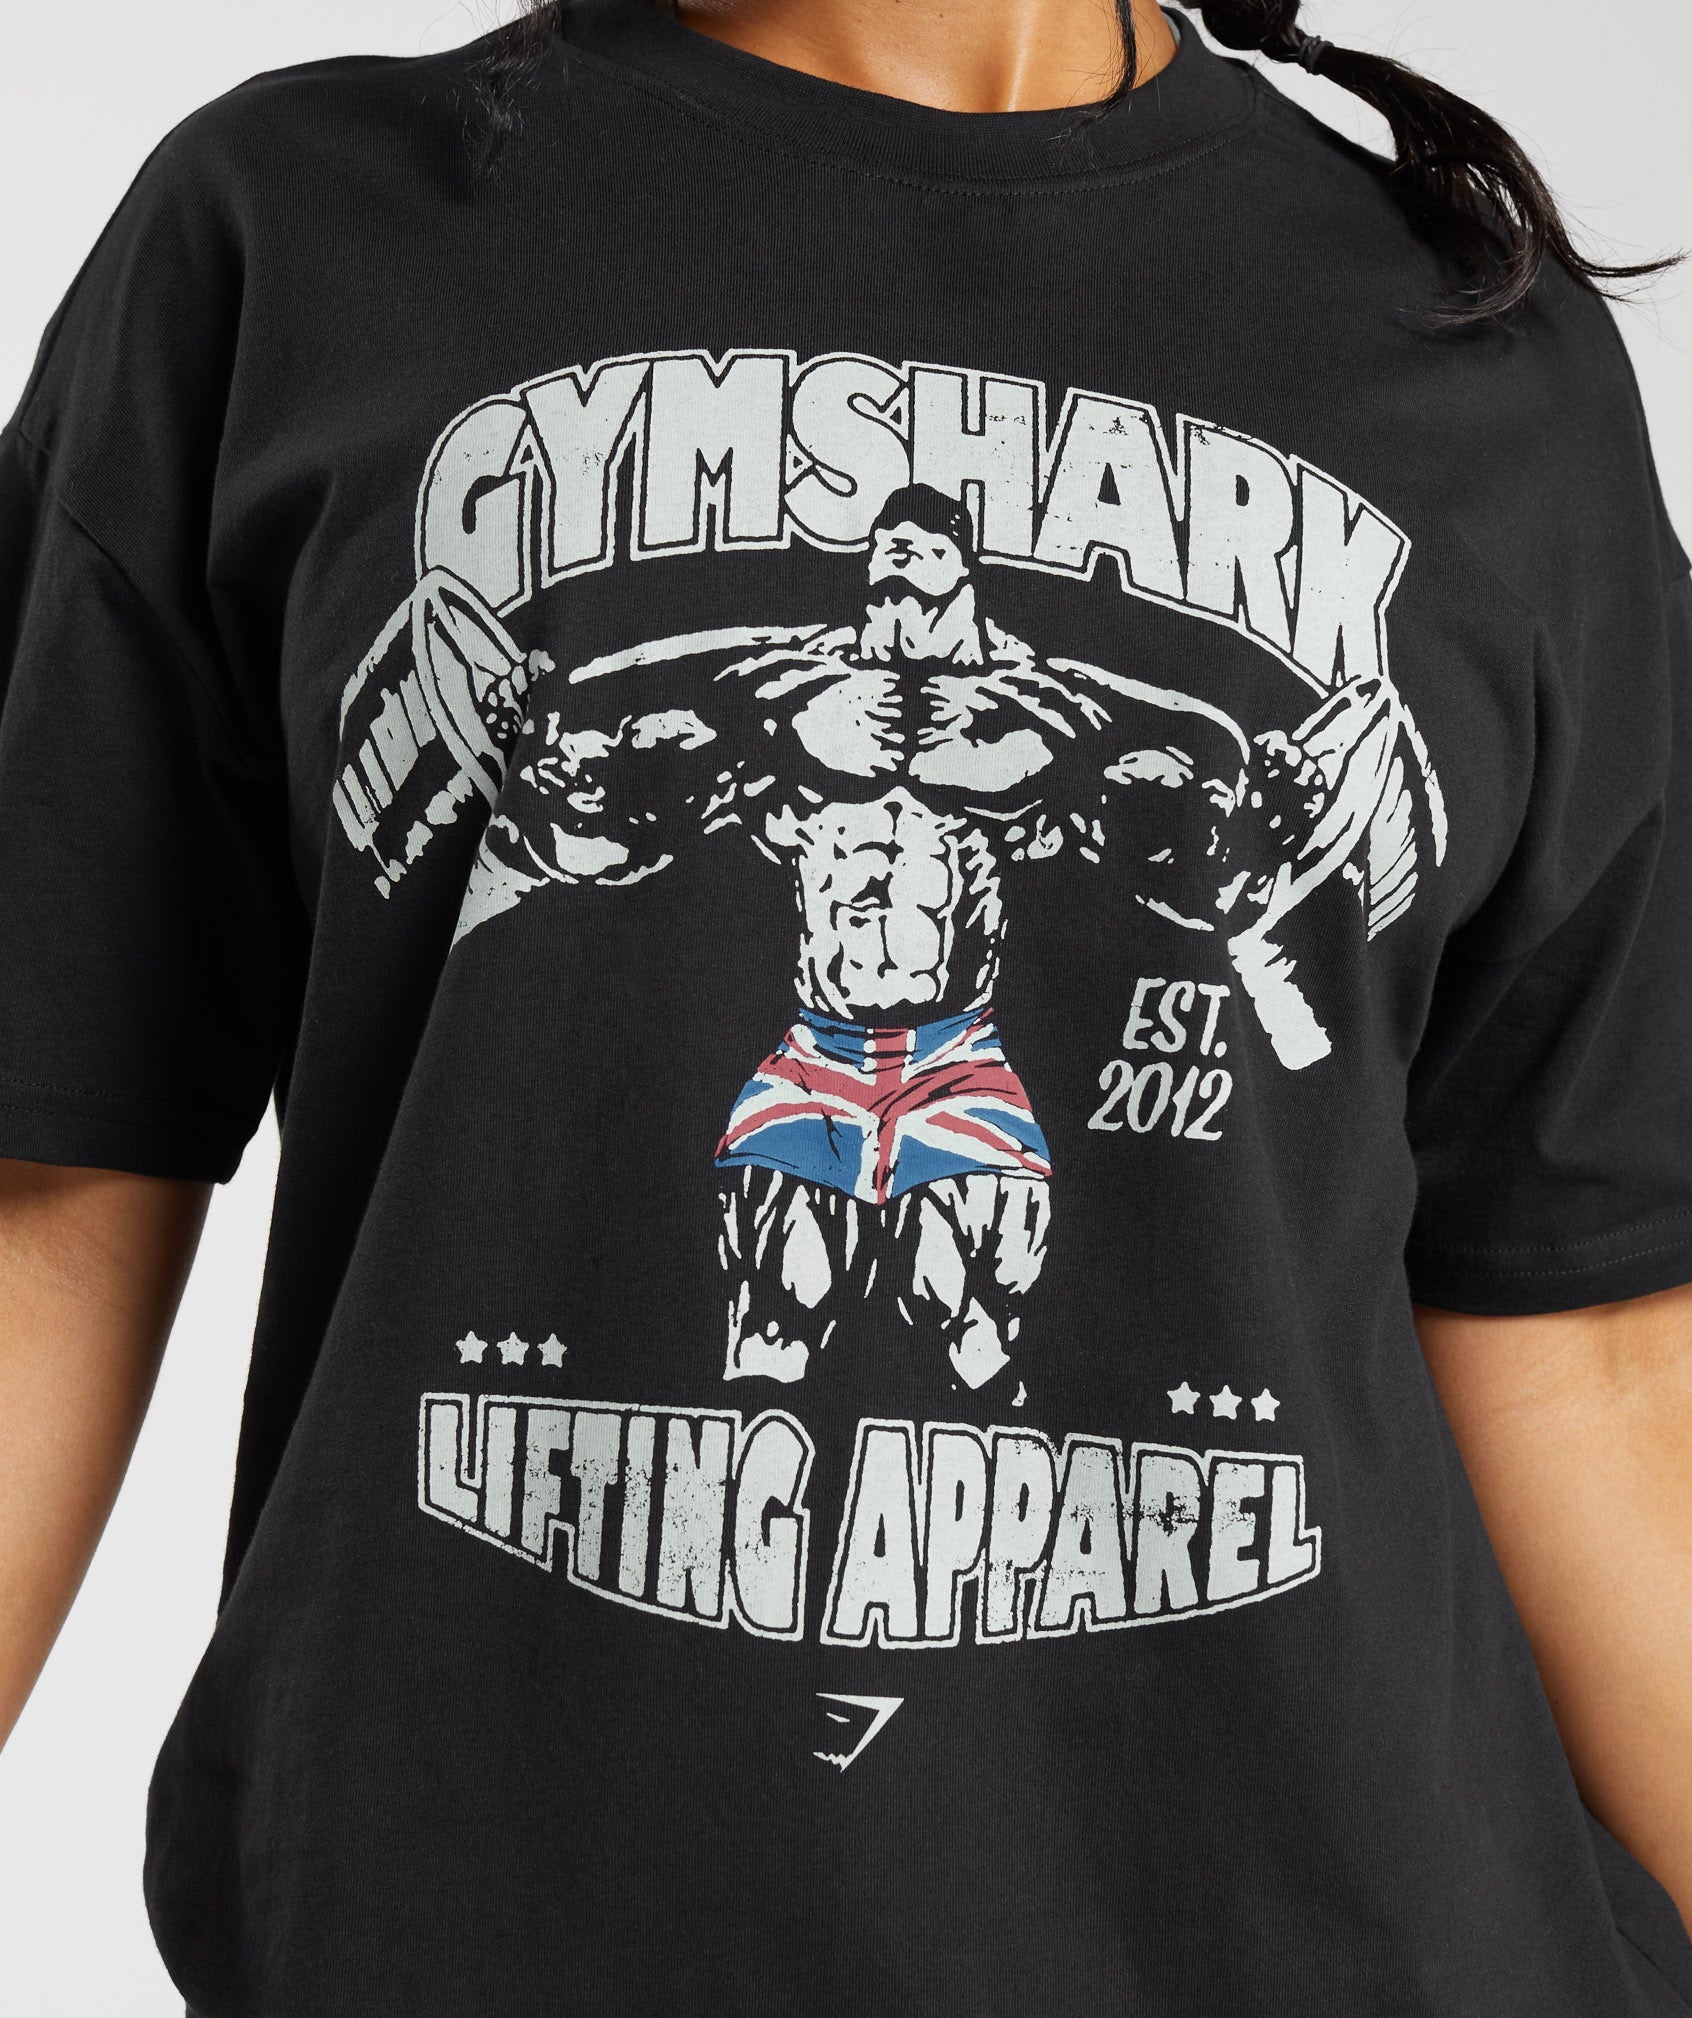 Gymshark T-Shirt Womens Large Black Shark Print Short Sleeve Gym